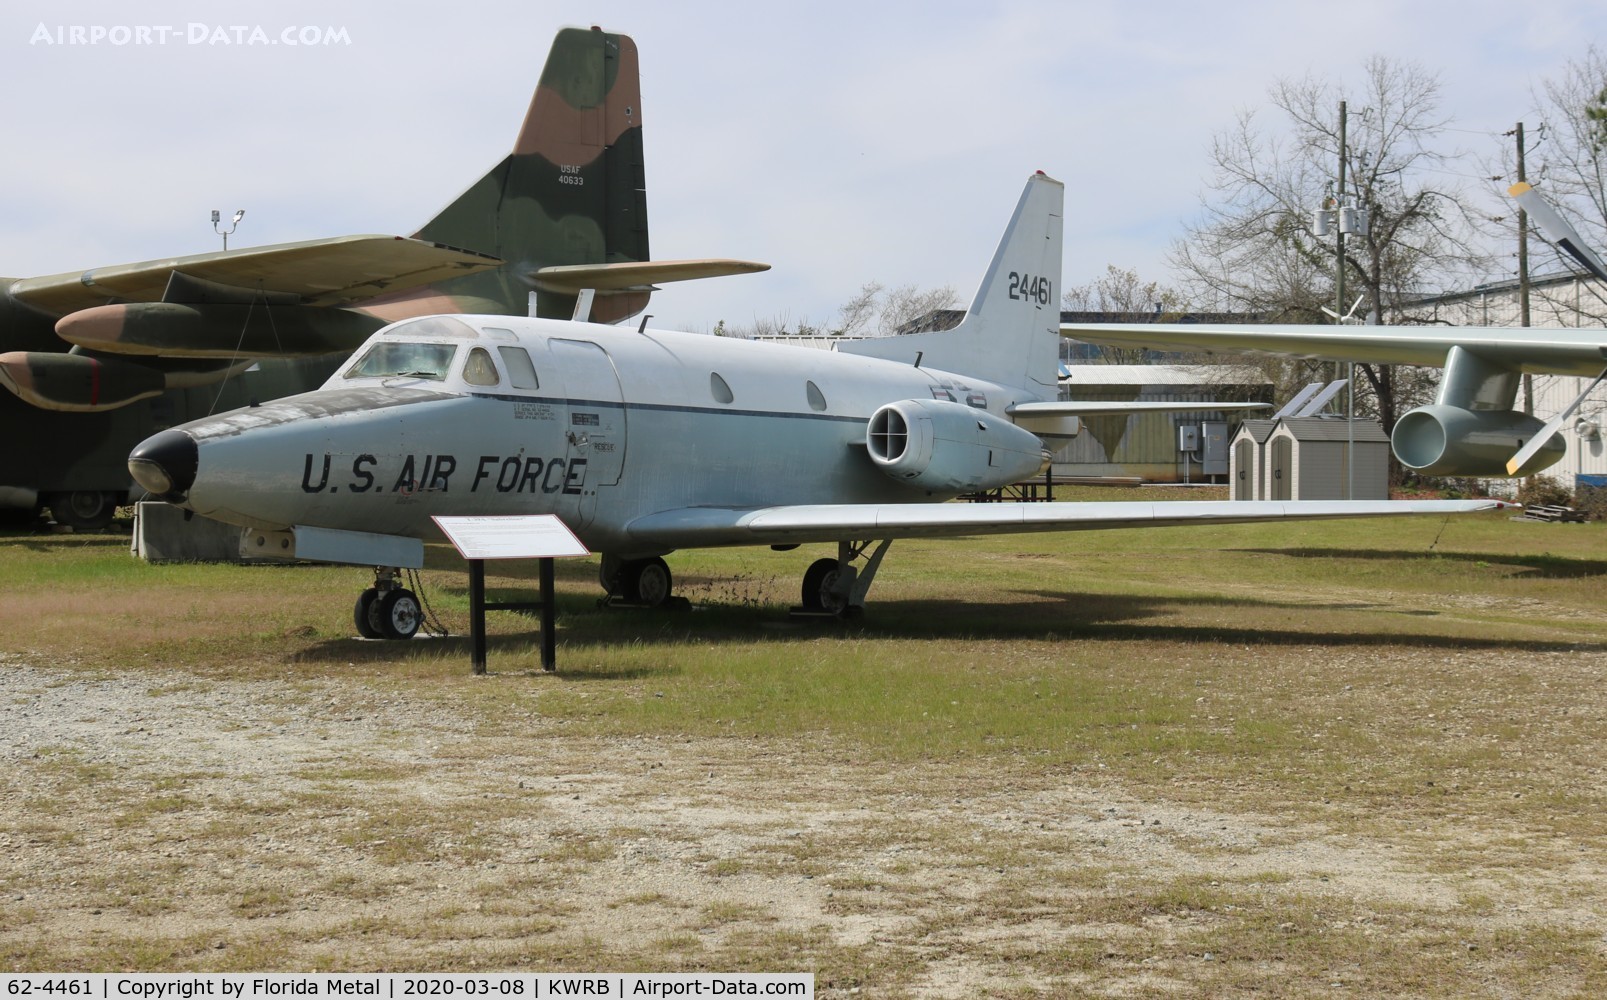 62-4461, 1962 North American CT-39A Sabreliner C/N 276-14, T-39 zx